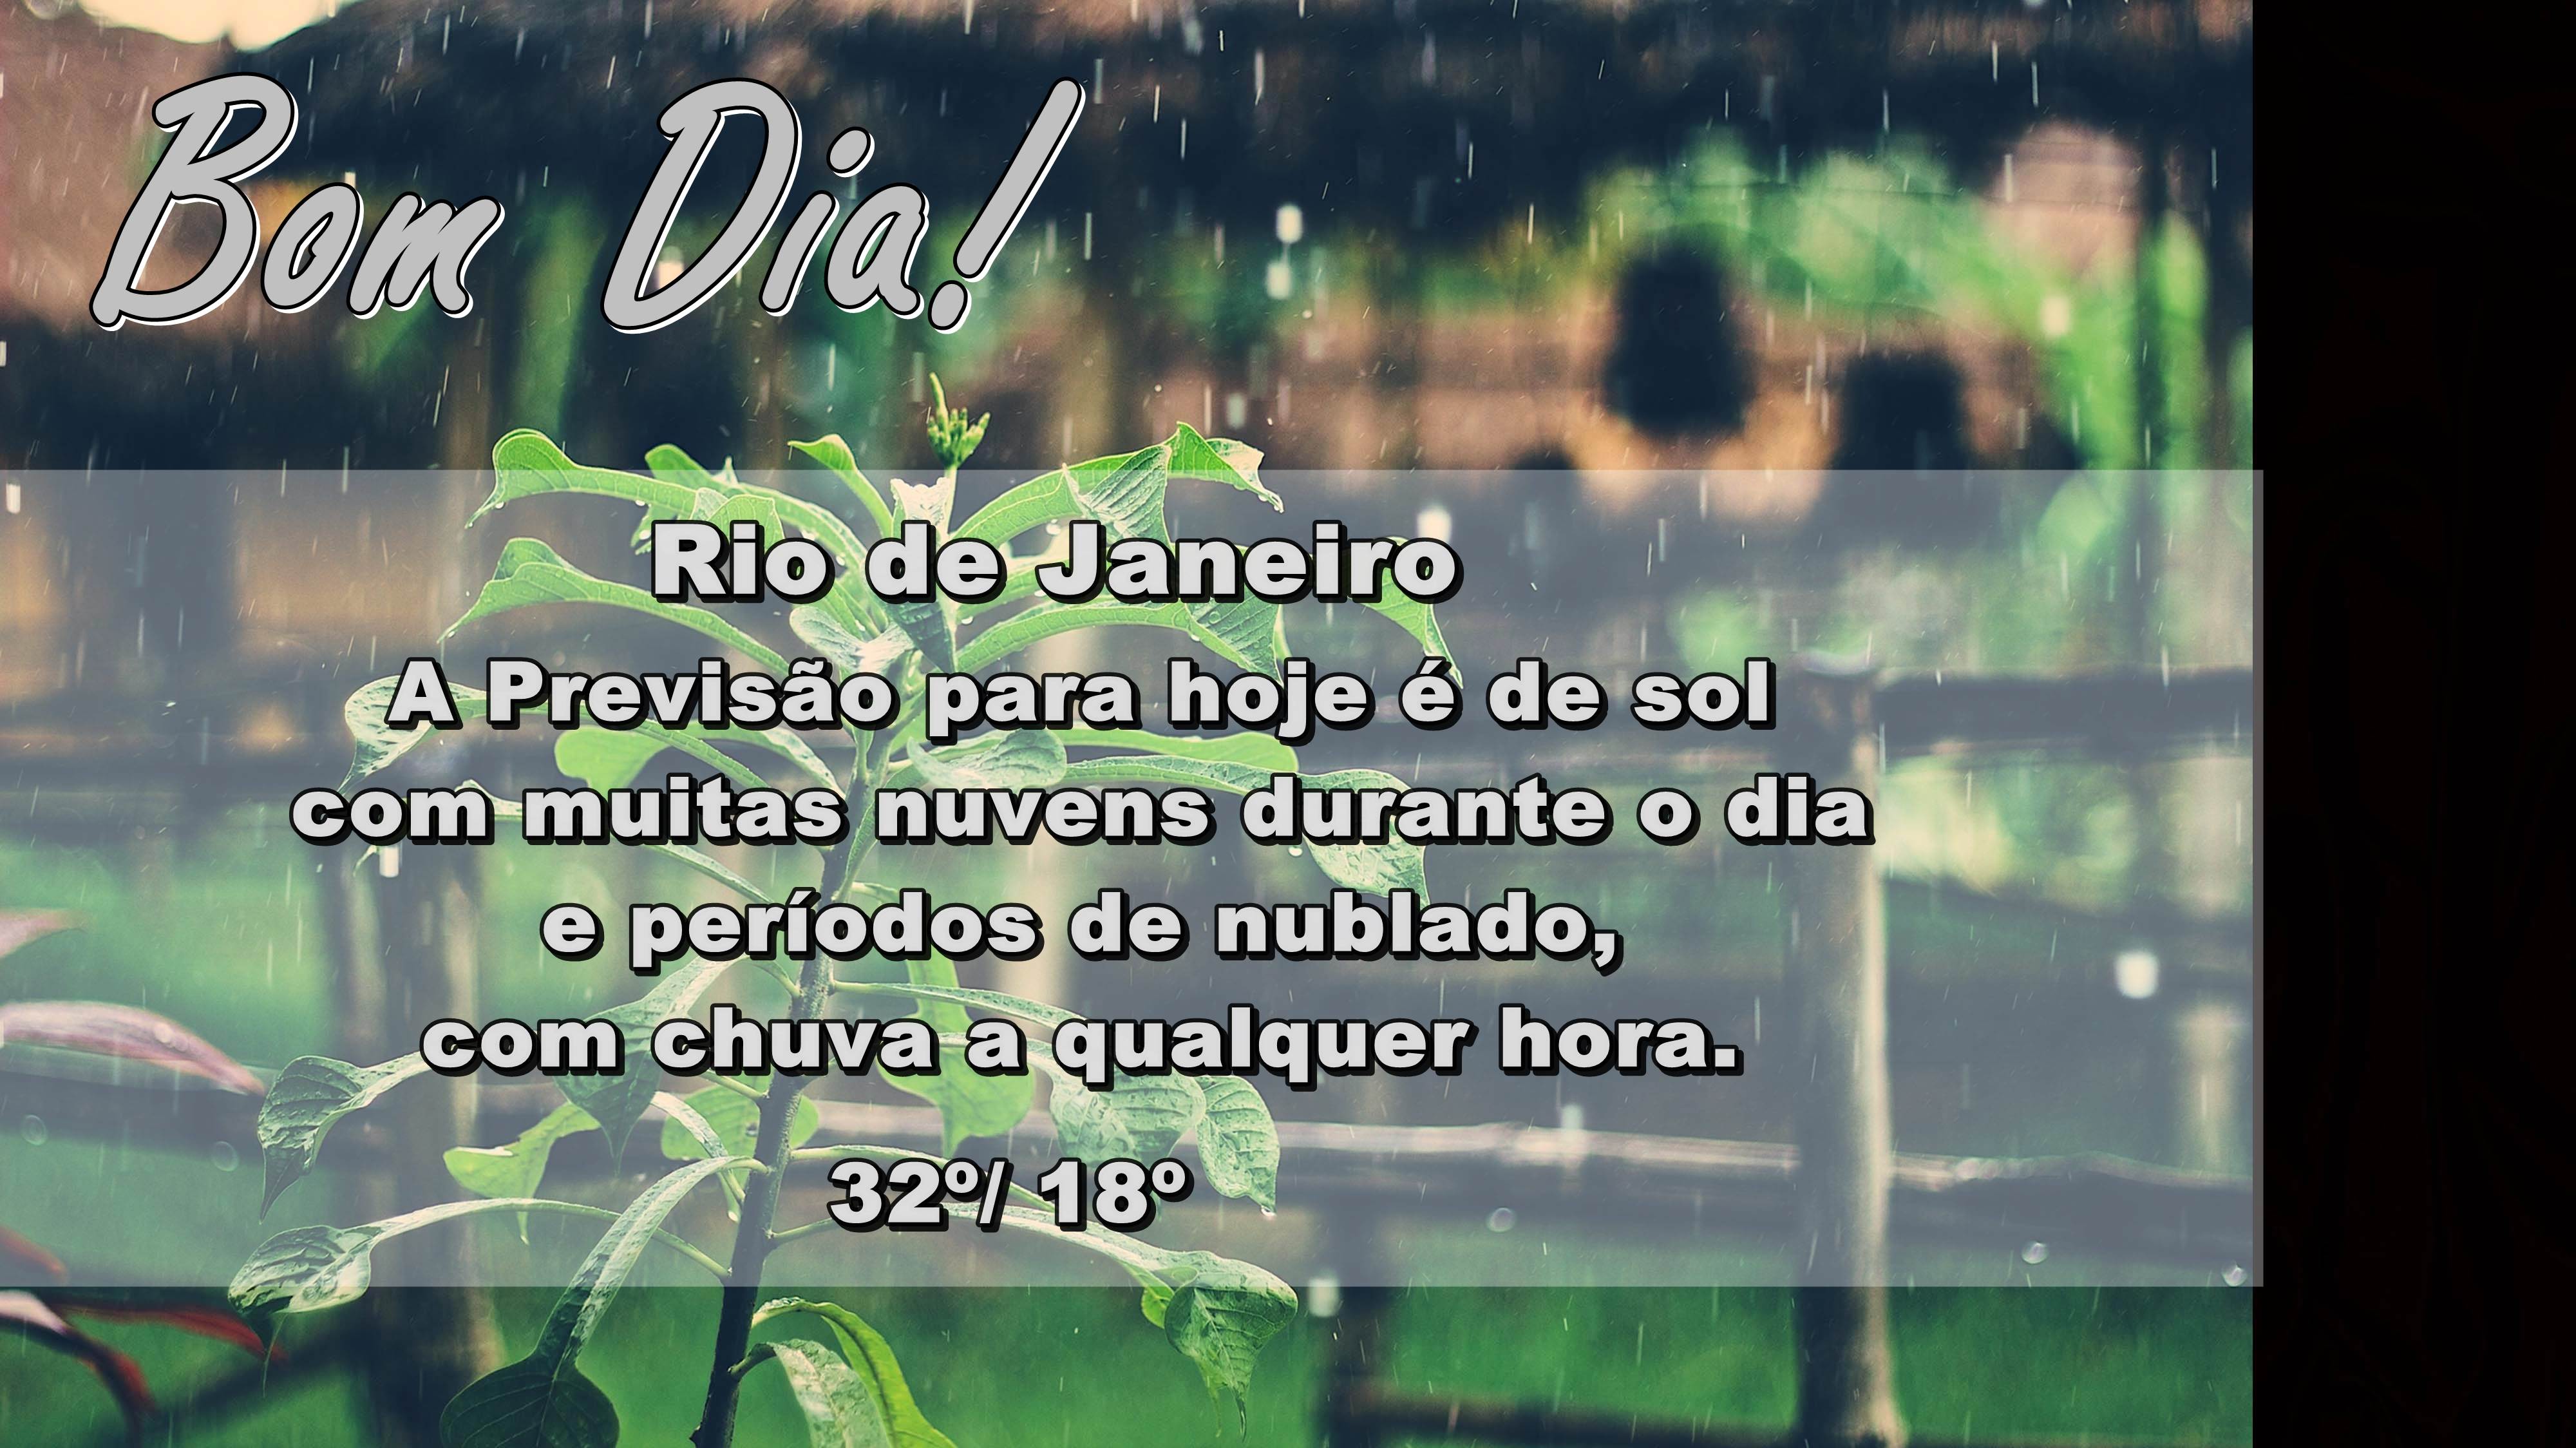 SITE MODELO - BOM DIA CHUVA 020616 Site | Rádio Rio de Janeiro